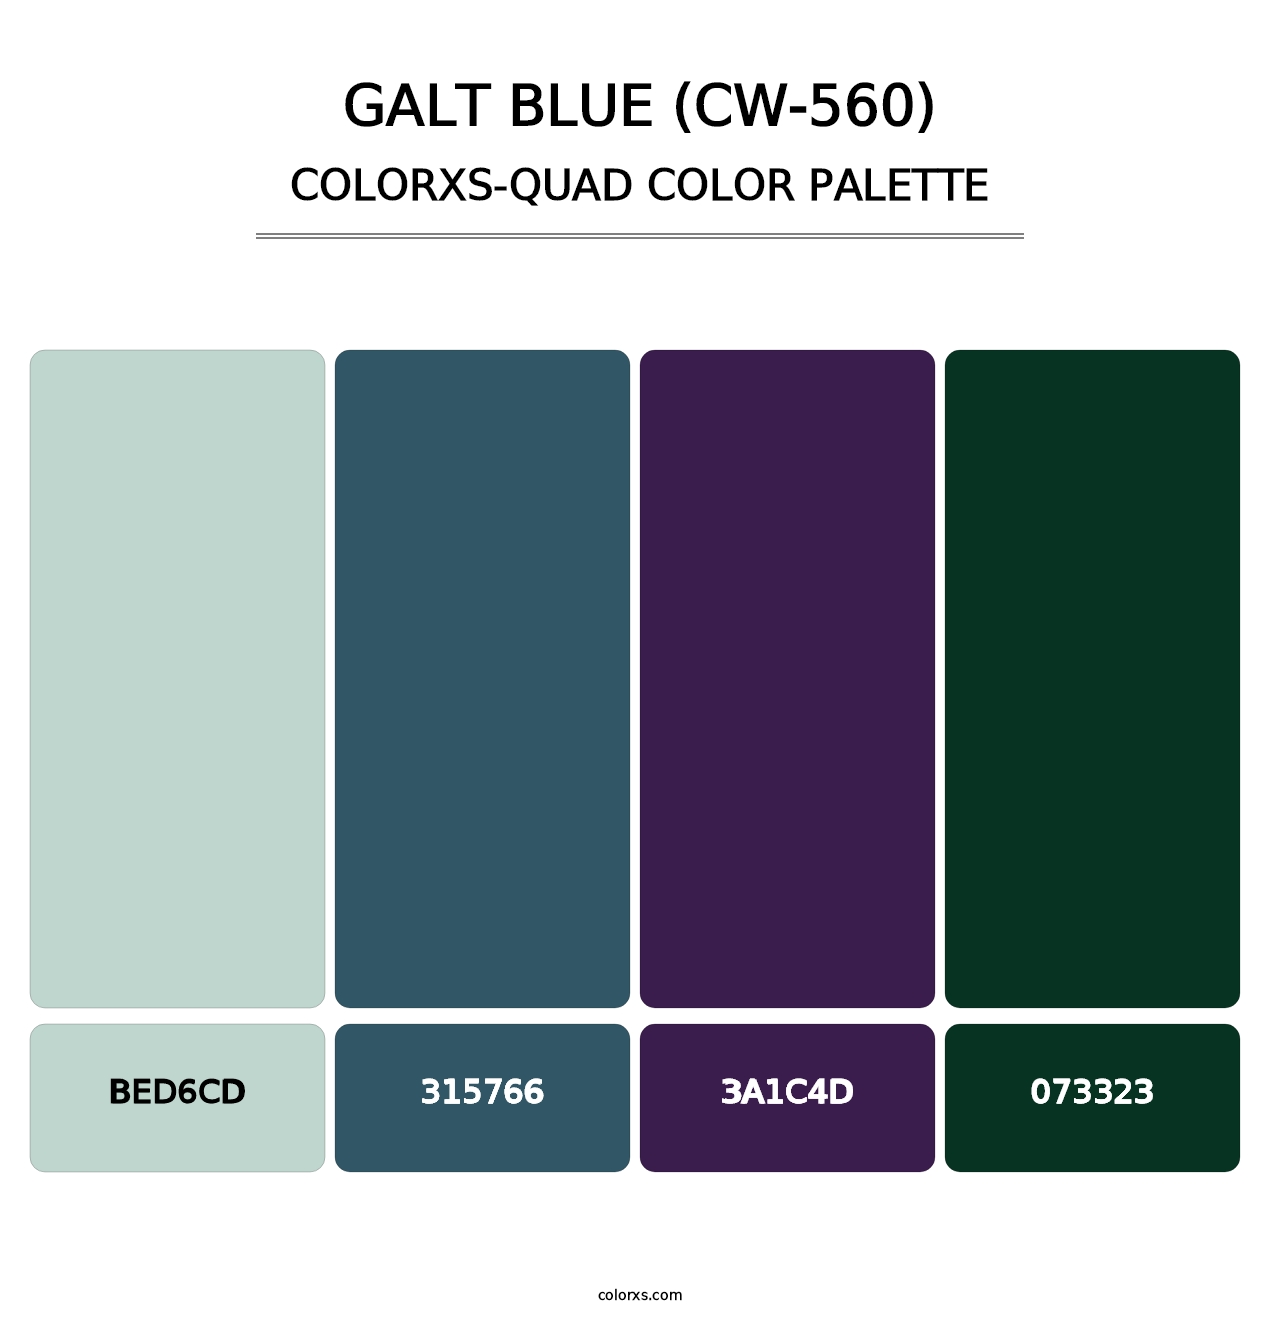 Galt Blue (CW-560) - Colorxs Quad Palette